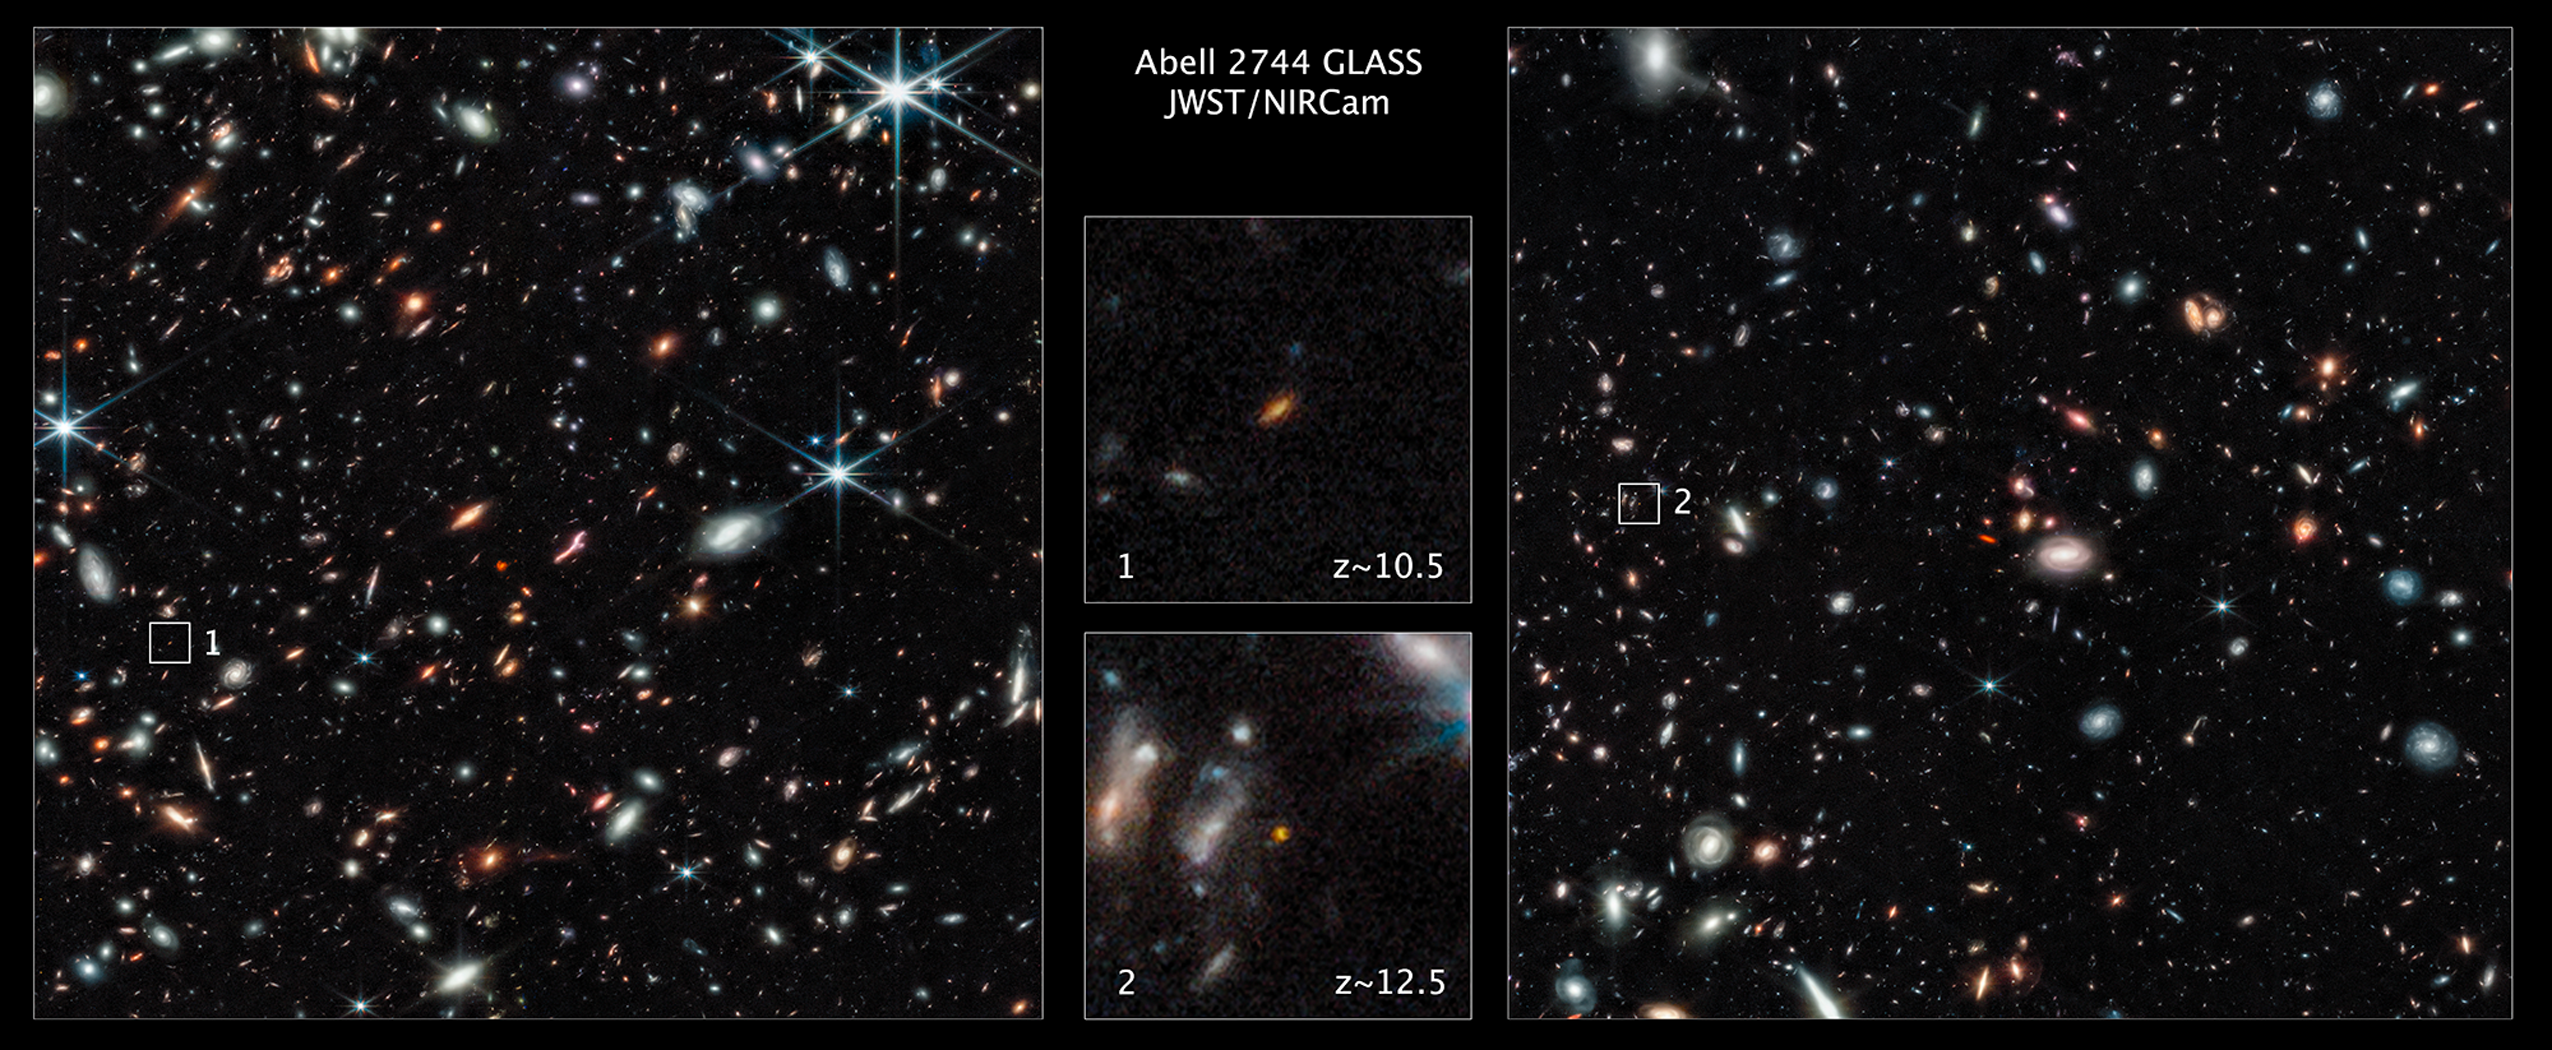 Las galaxias observadas son de las ms antiguas halladas